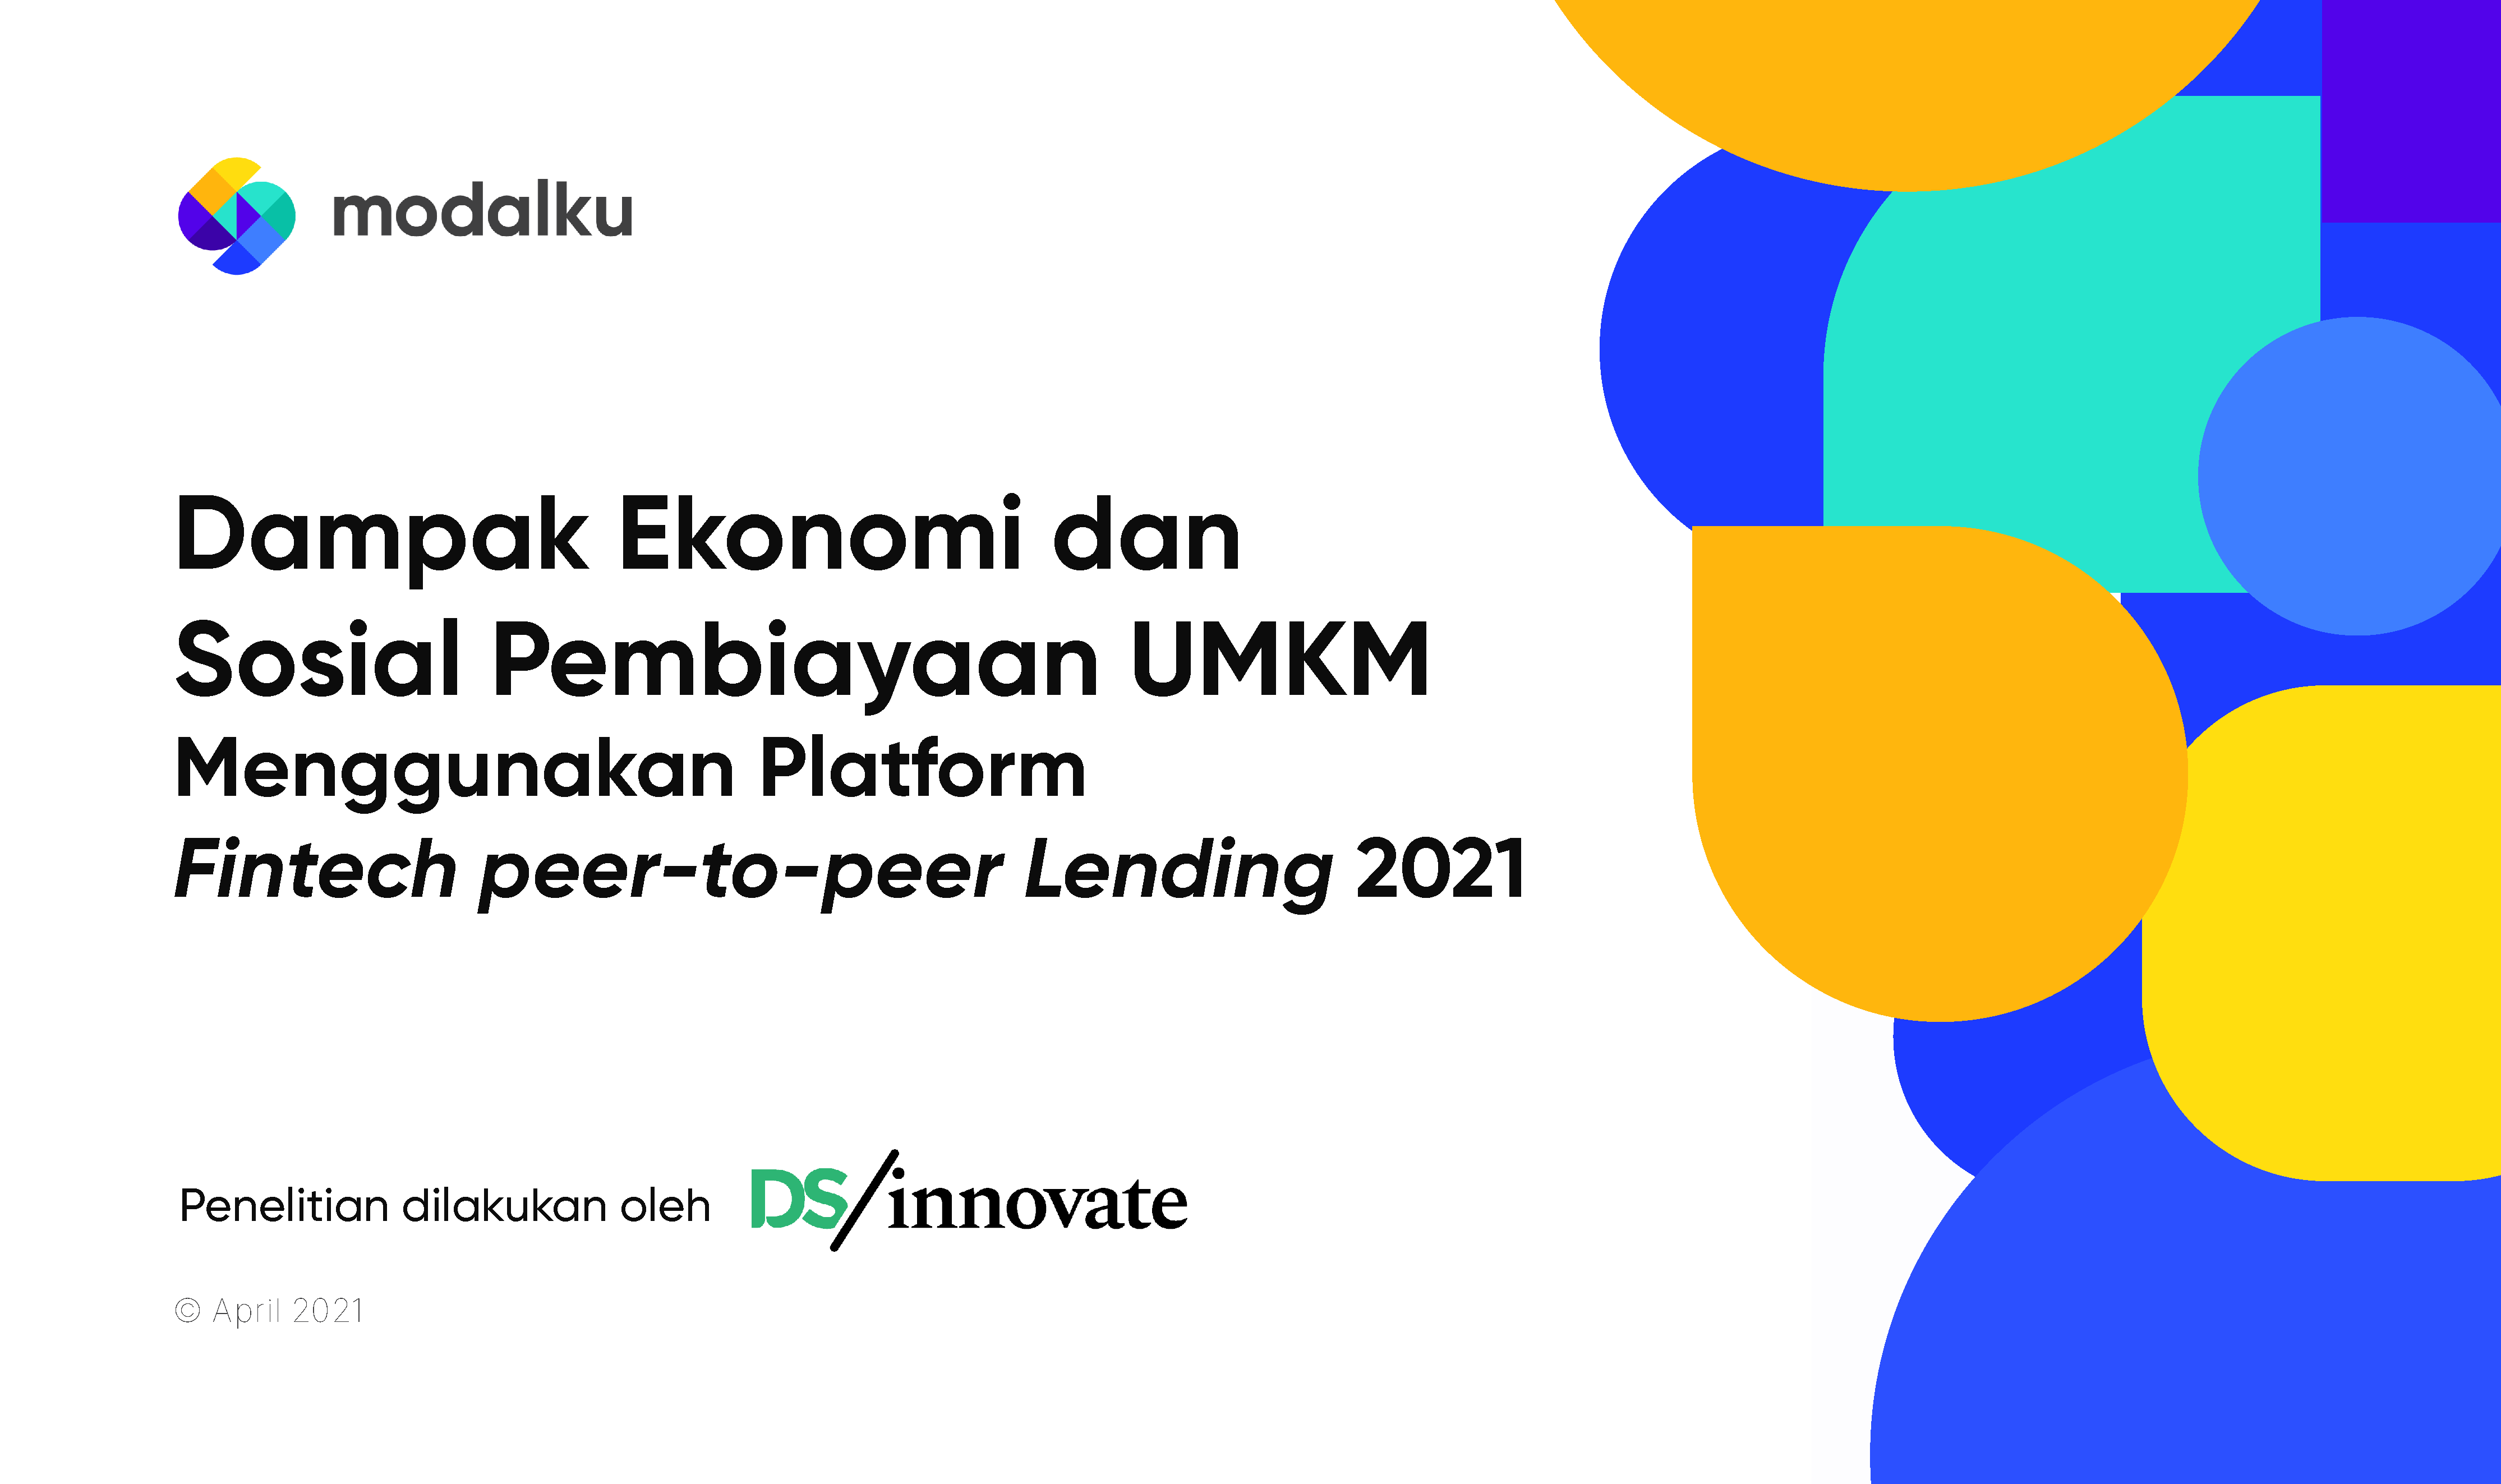 Dampak Ekonomi dan Sosial Pembiayaan UMKM Menggunakan Fintech Peer-to-Peer Lending 2021